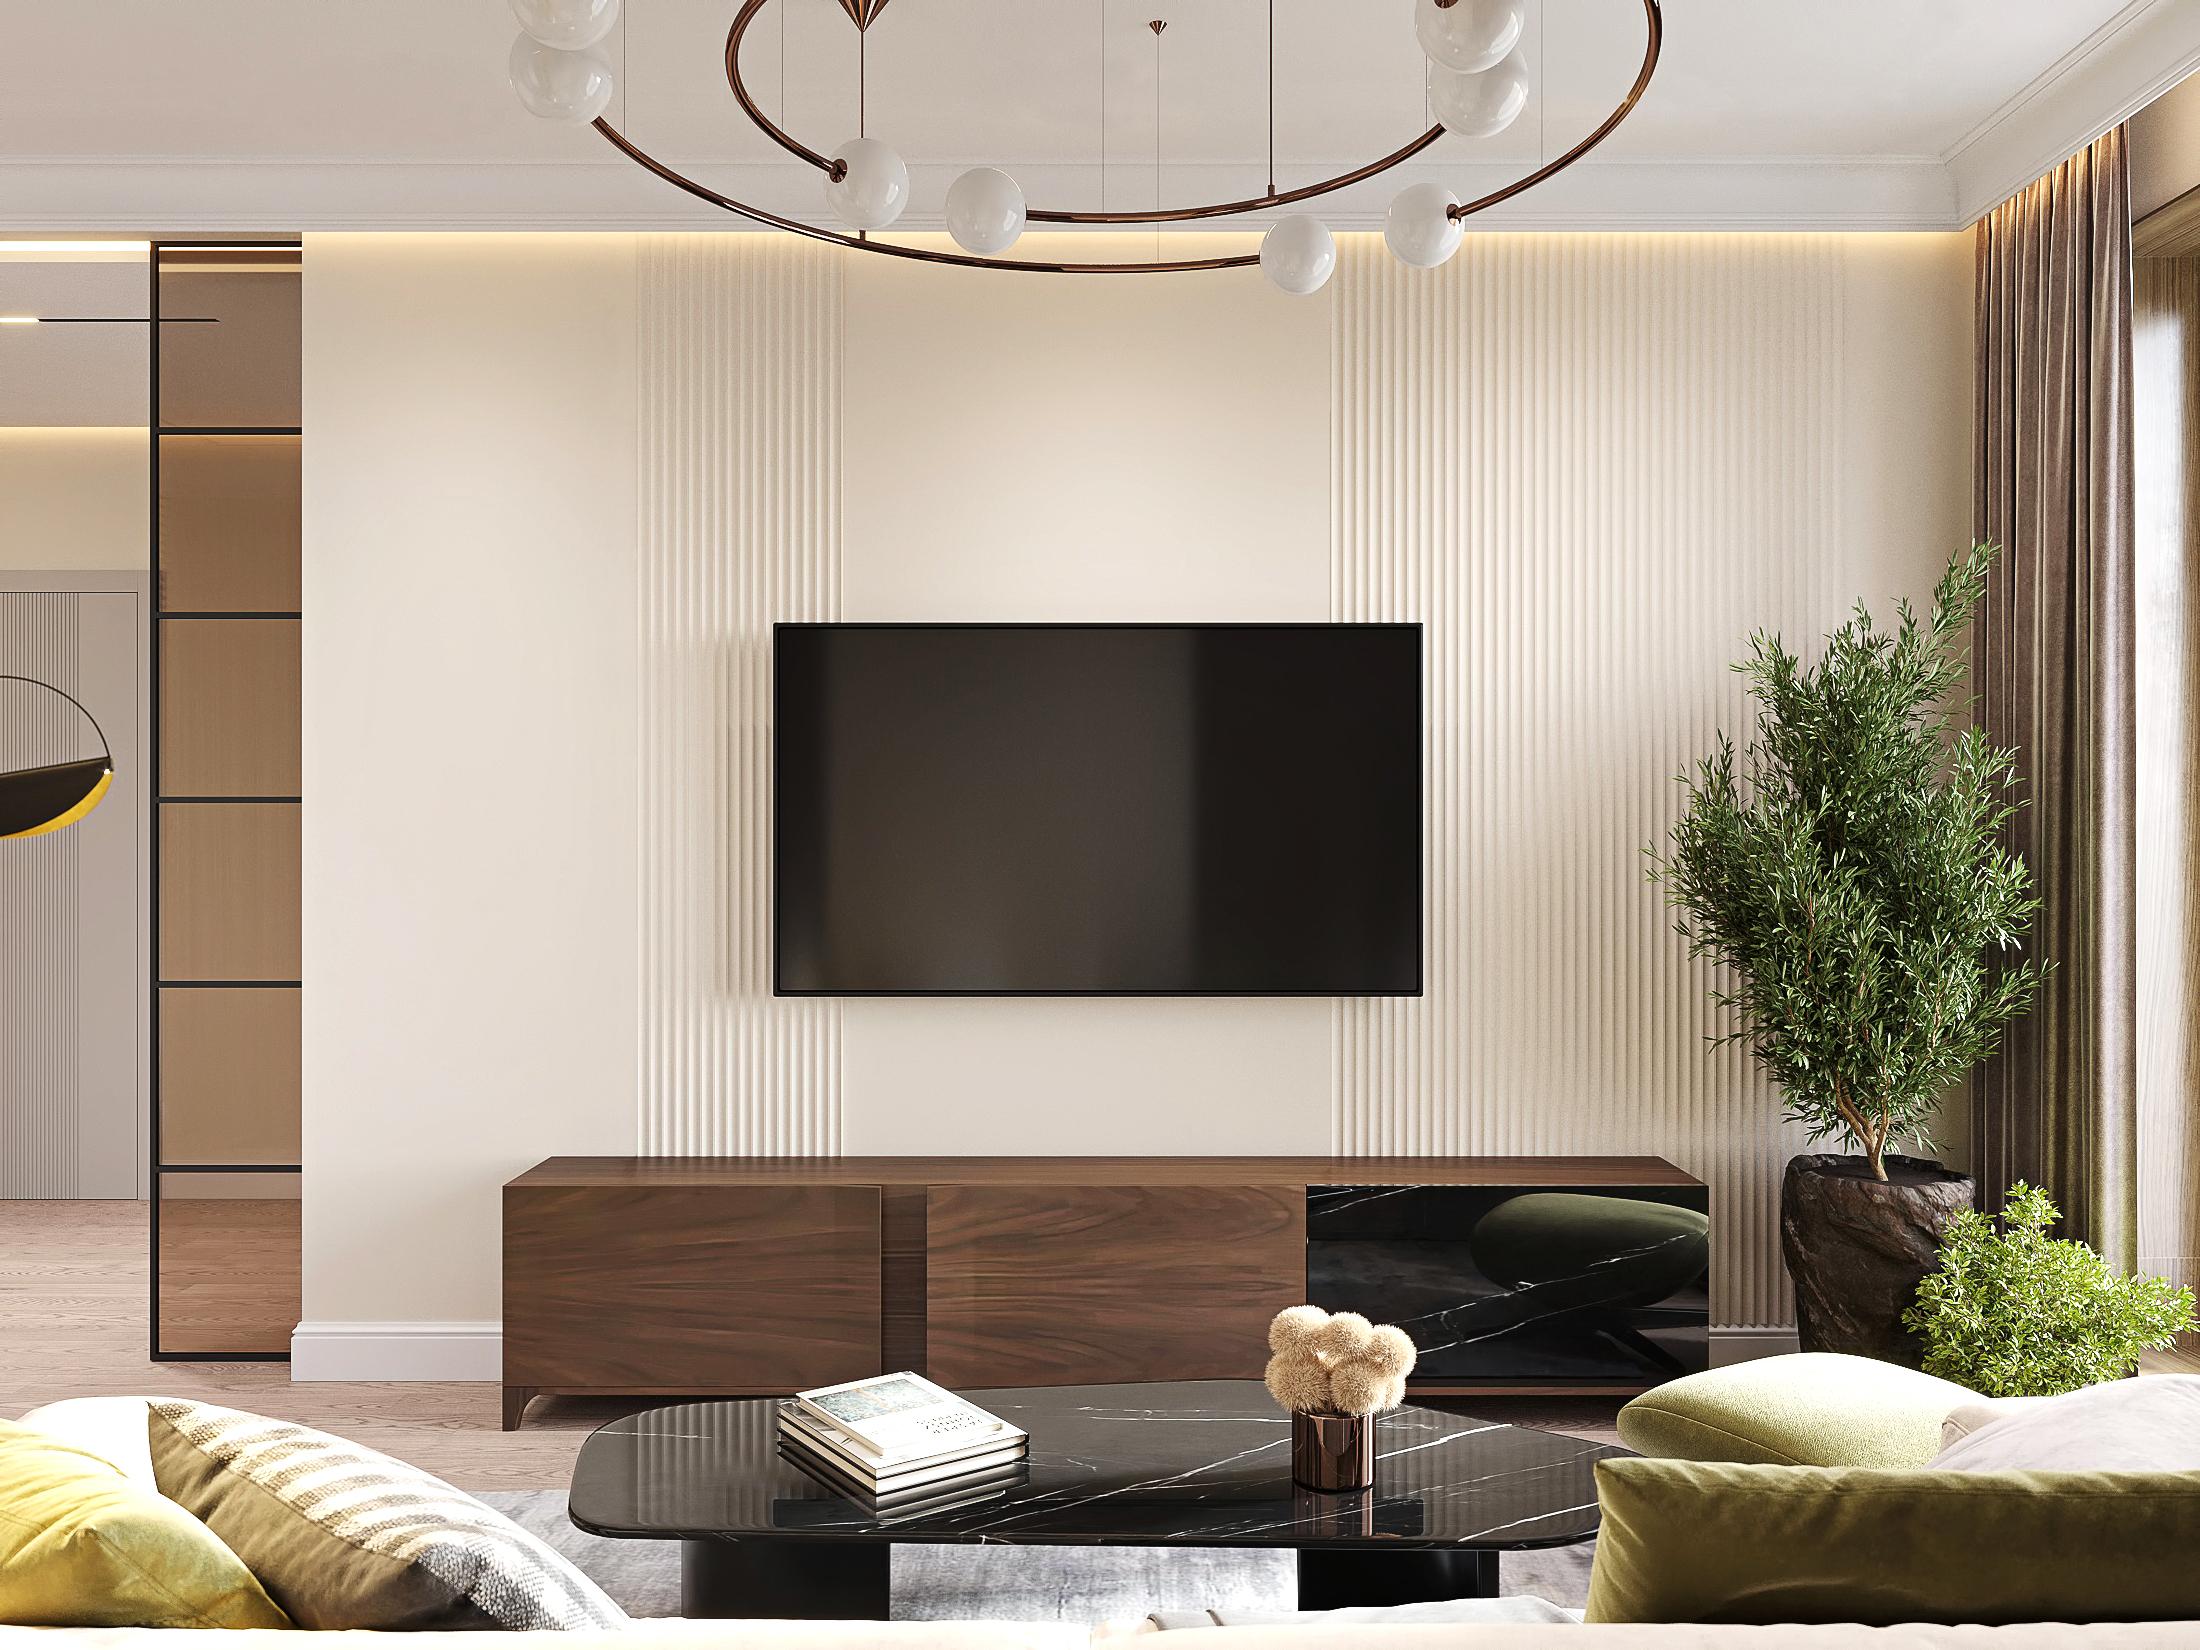 Интерьер гостиной cветовыми линиями, телевизором на рейках, рейками с подсветкой, подсветкой настенной и подсветкой светодиодной